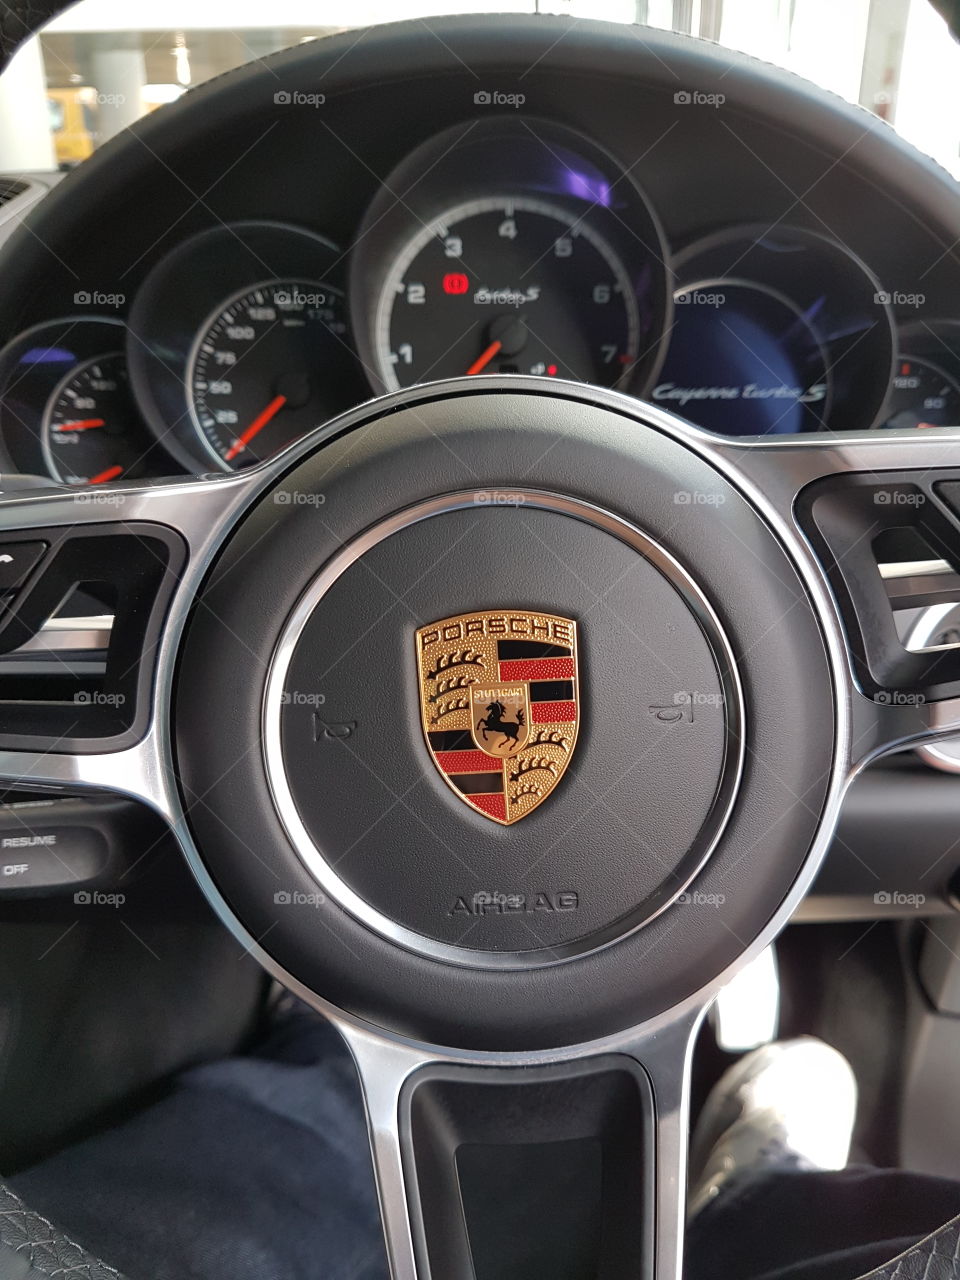 Porsche car interior